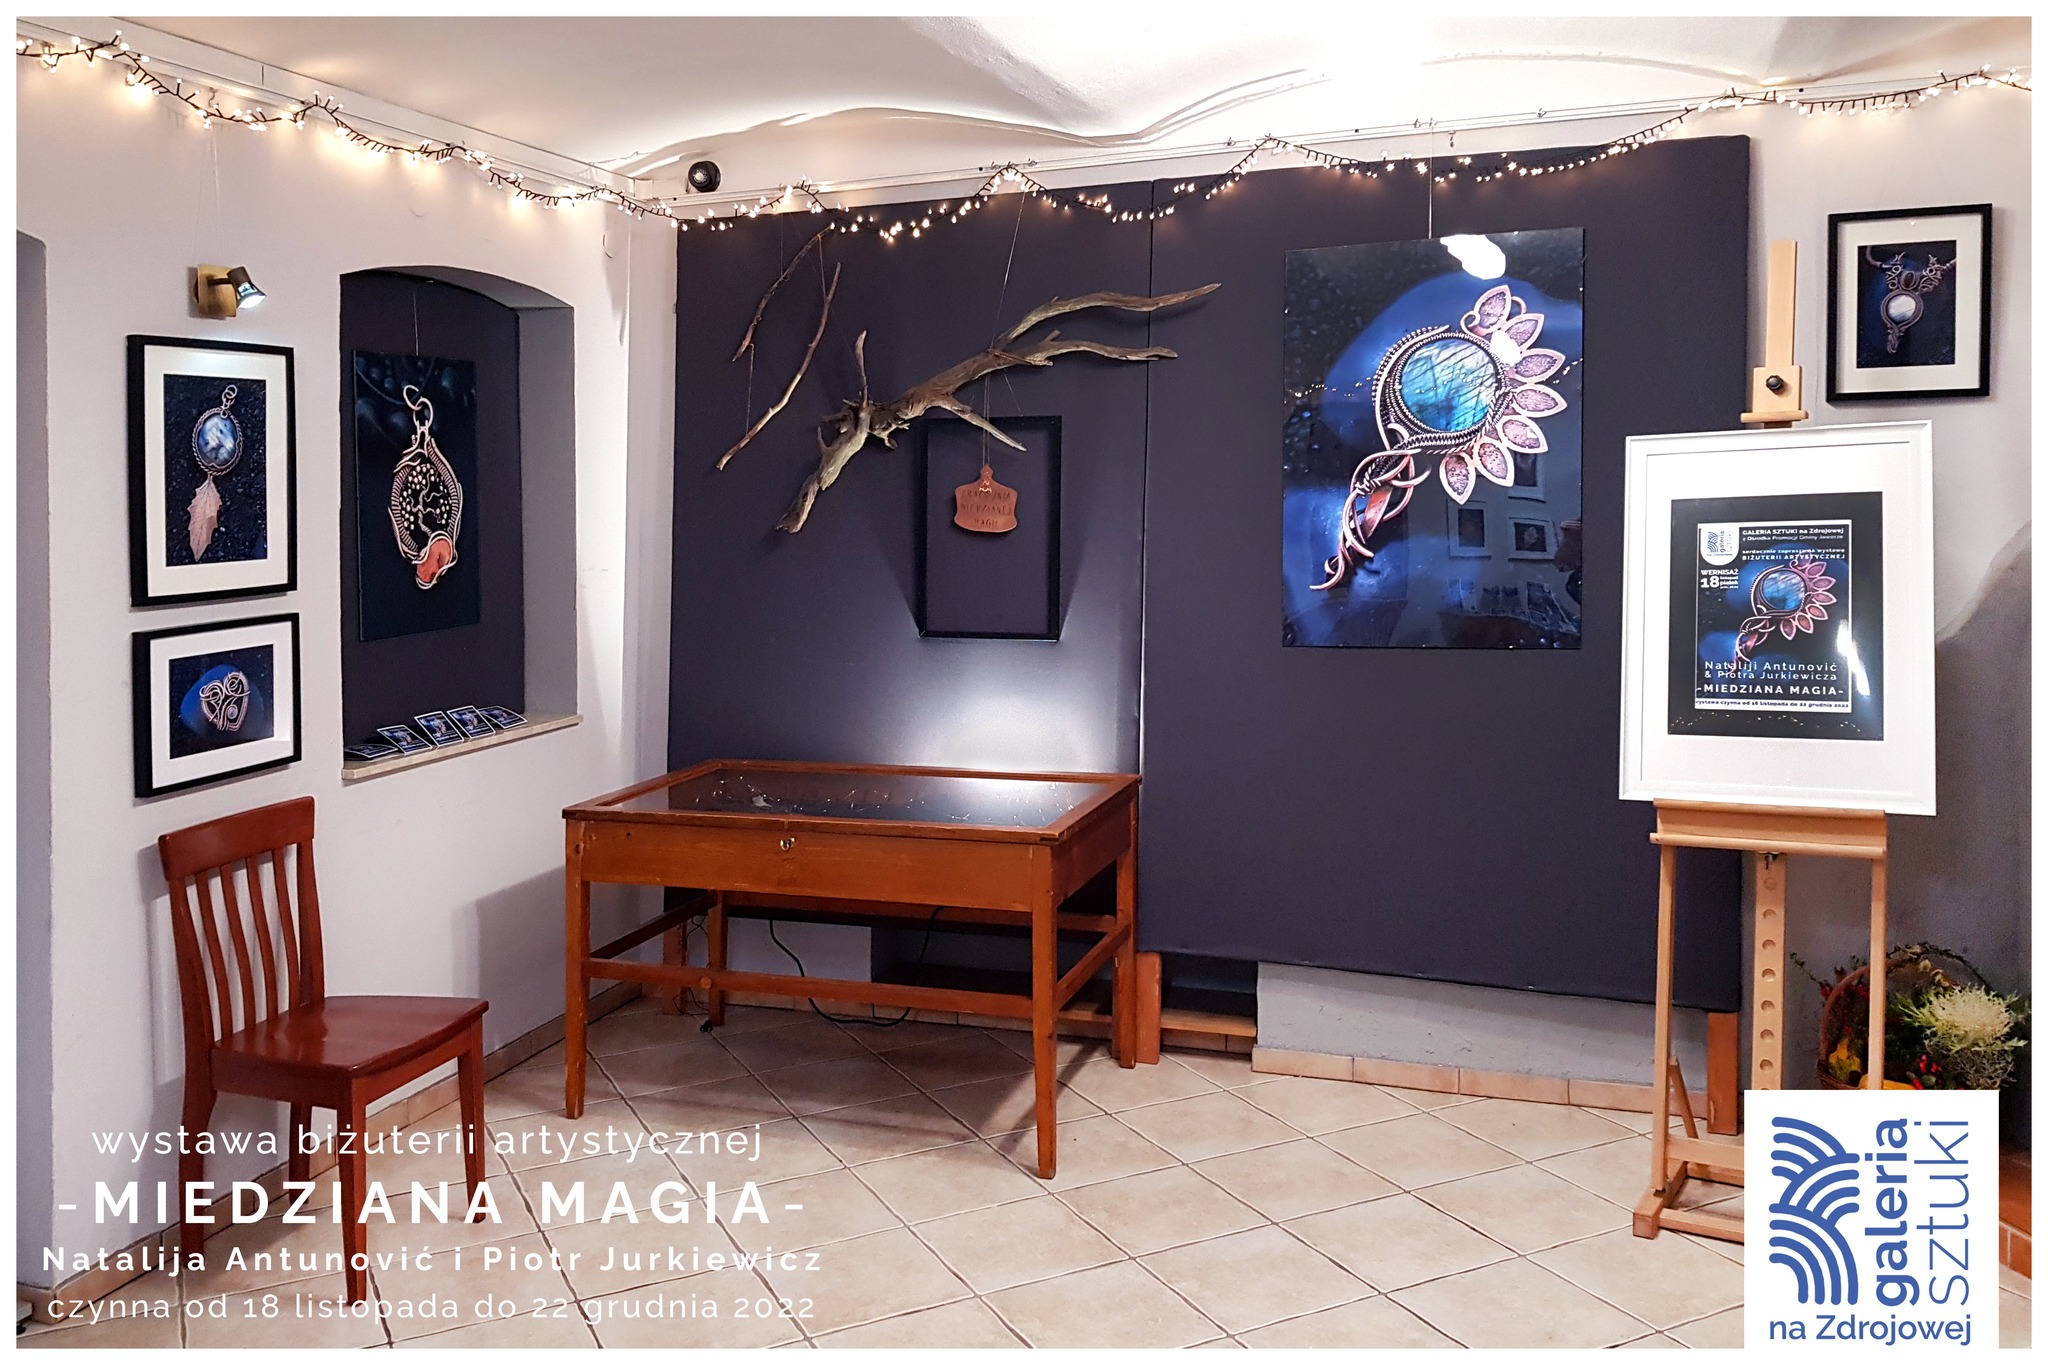 Wernisaż wystawy biżuterii artystycznej MIEDZIANA MAGIA. Na zdjęciu część ekspozycji.